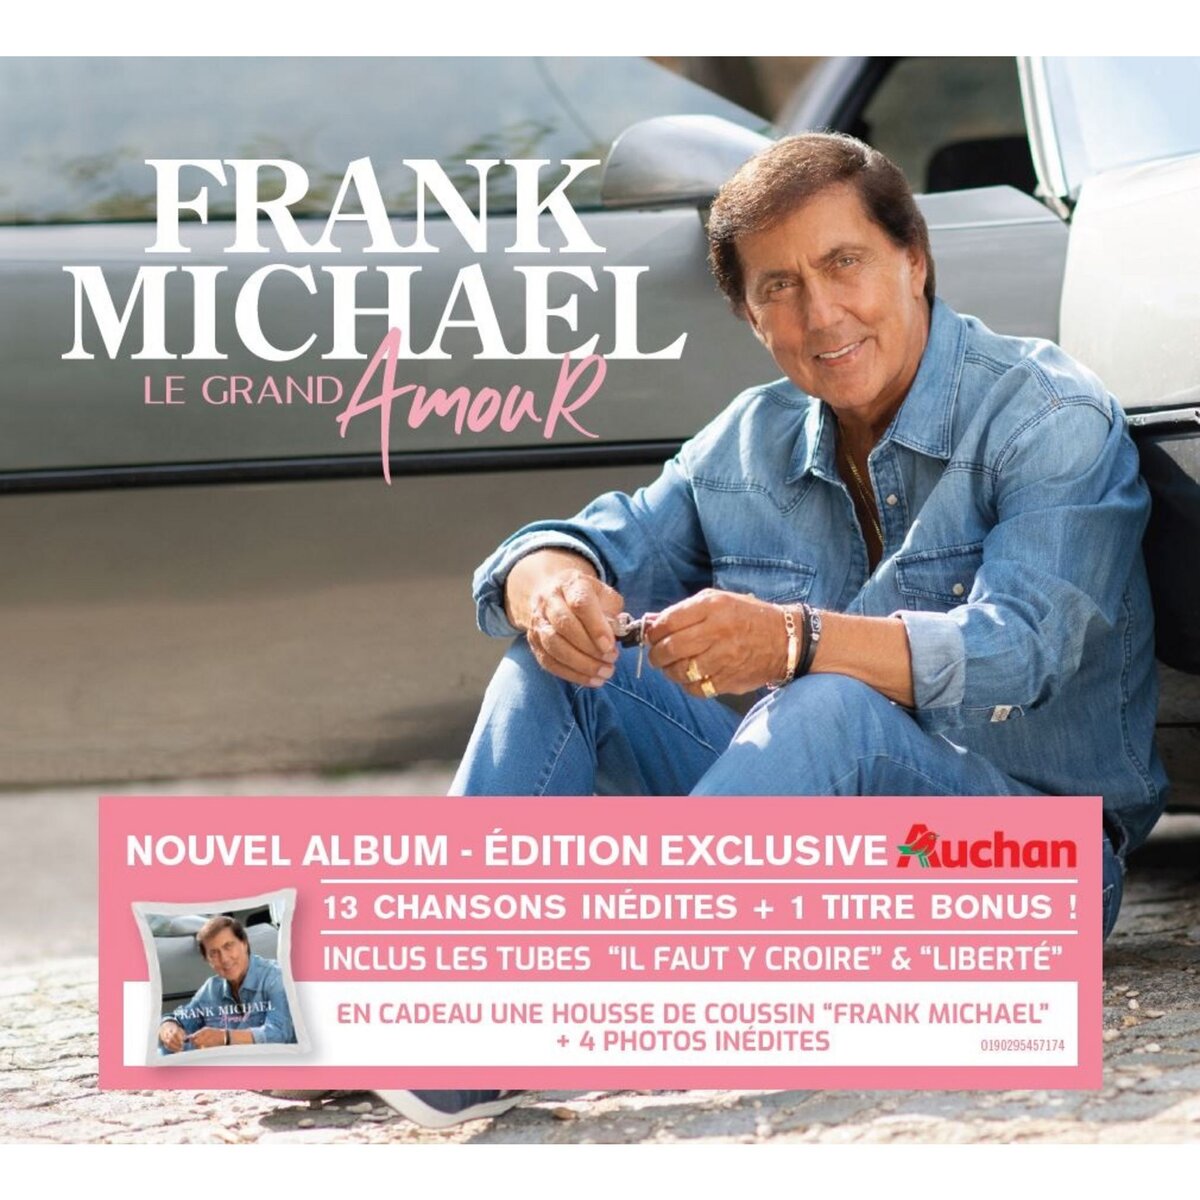 Le Grand Amour - Frank Michael CD Exclusivité Auchan